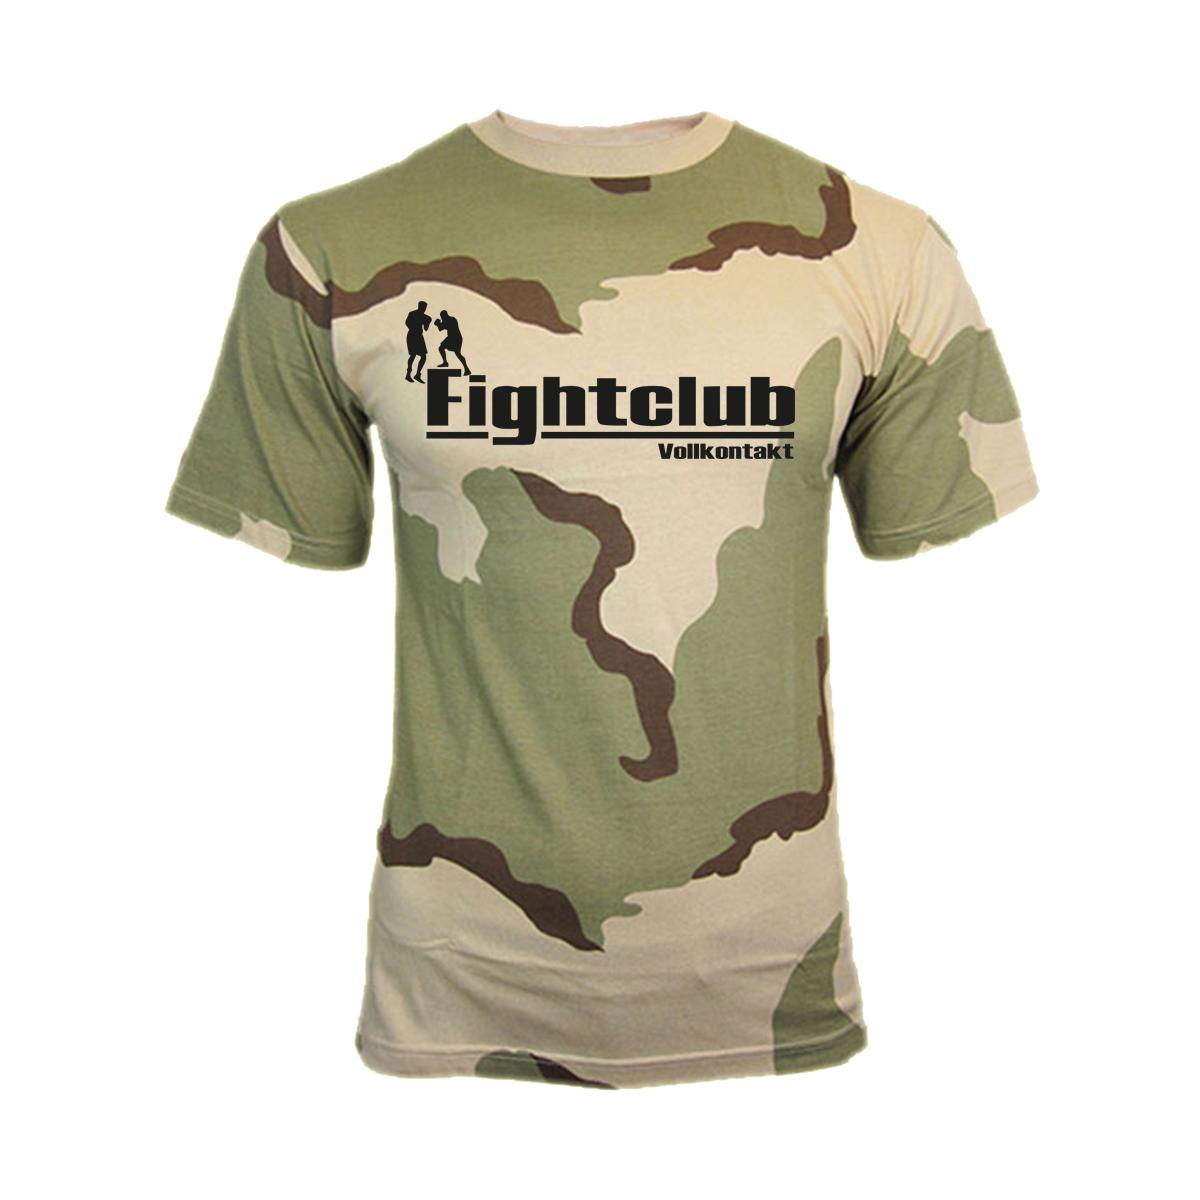 Fight Club - Vollkontakt - Männer T-Shirt - deserttarn